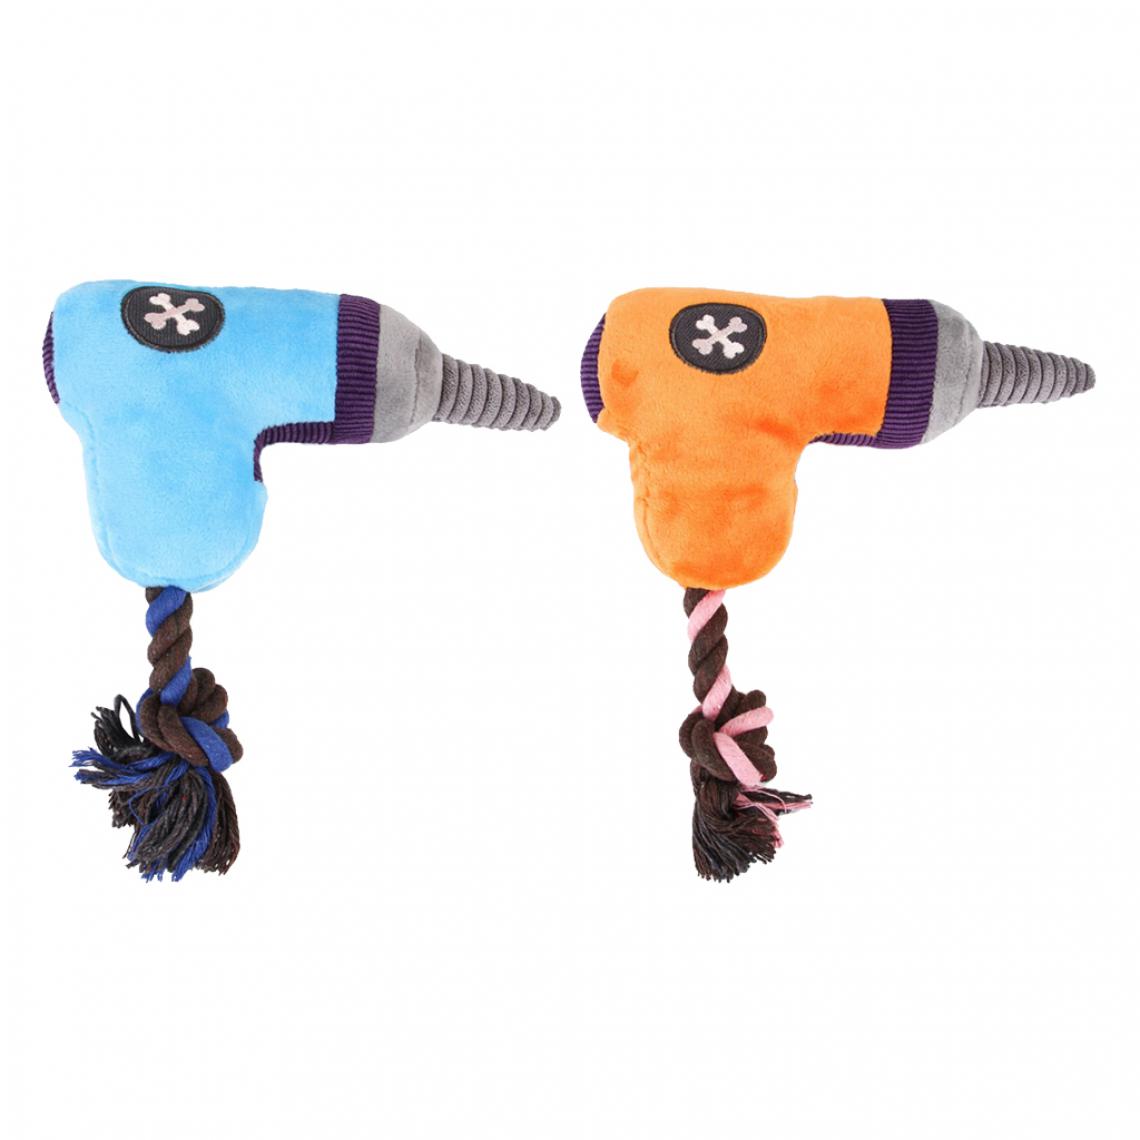 marque generique - 2 Chien à Mâcher Squeaky Toy Cartoon Drill Pet Dents Clean Sound Toys Bue / Orange - Jouet pour chien